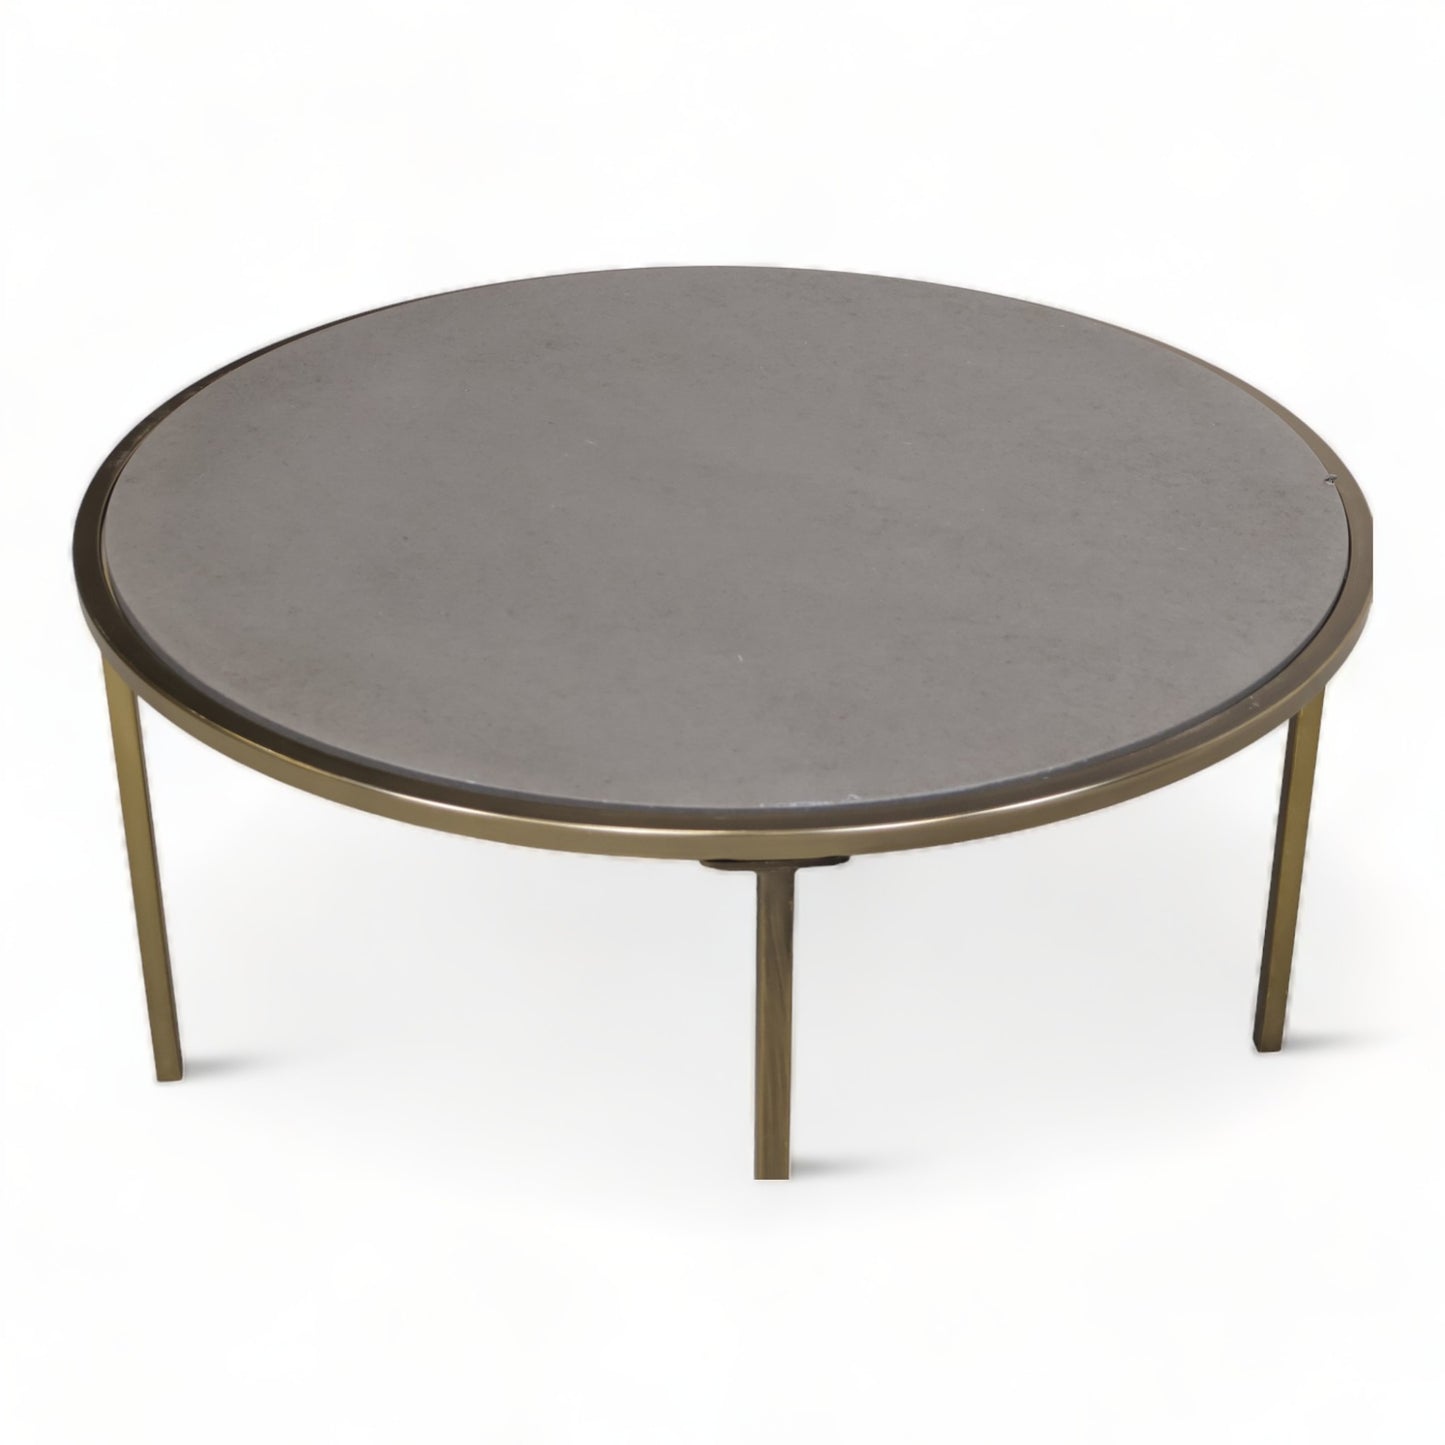 Kvalitetssikret | Moderne sofabord i fargen grå fra A-Møbler